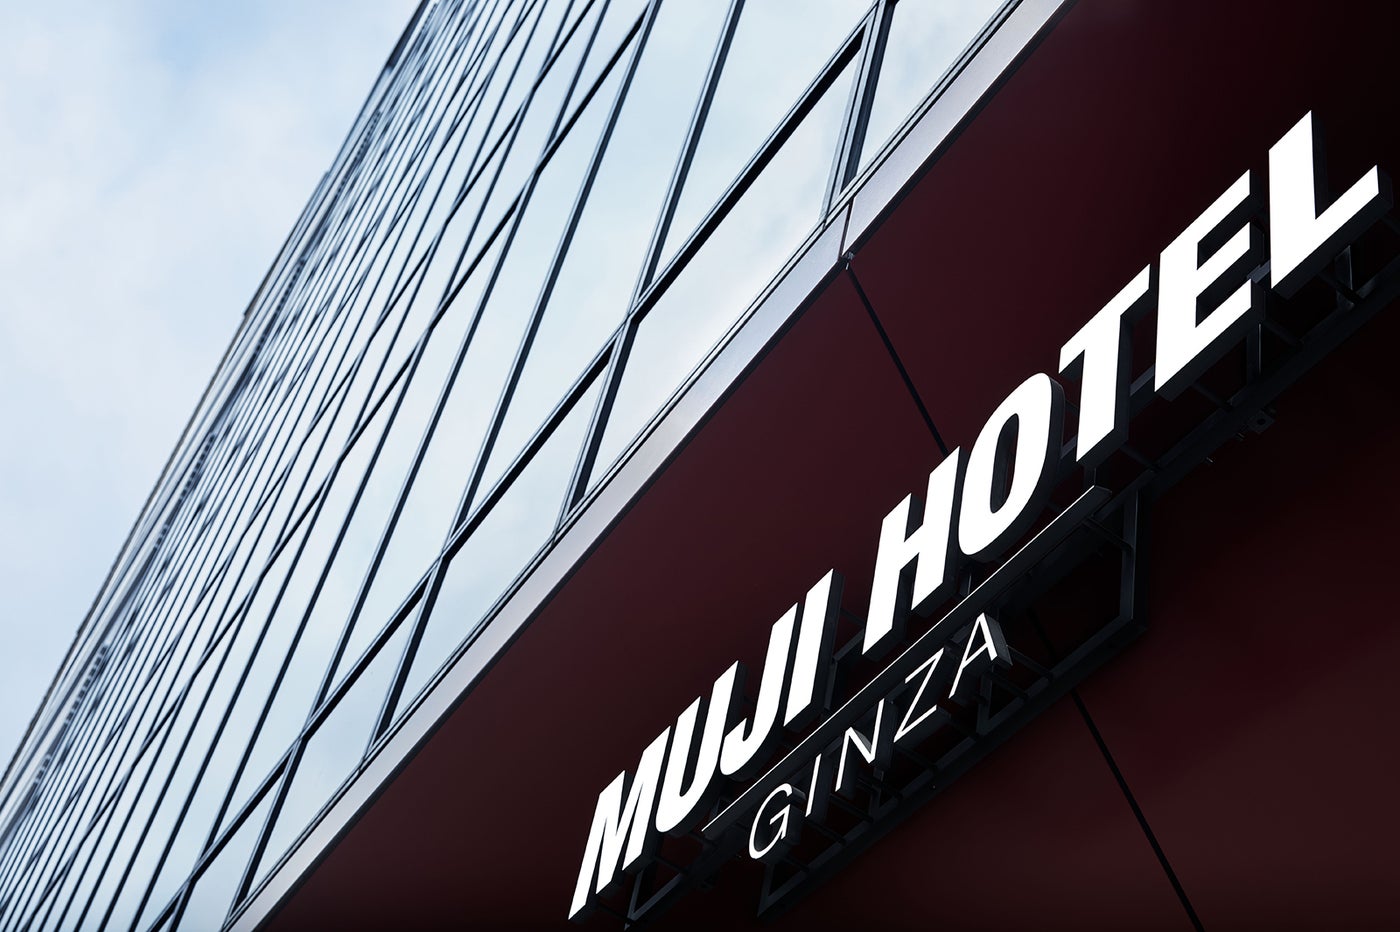 MUJI HOTEL GINZA／画像提供：株式会社良品計画